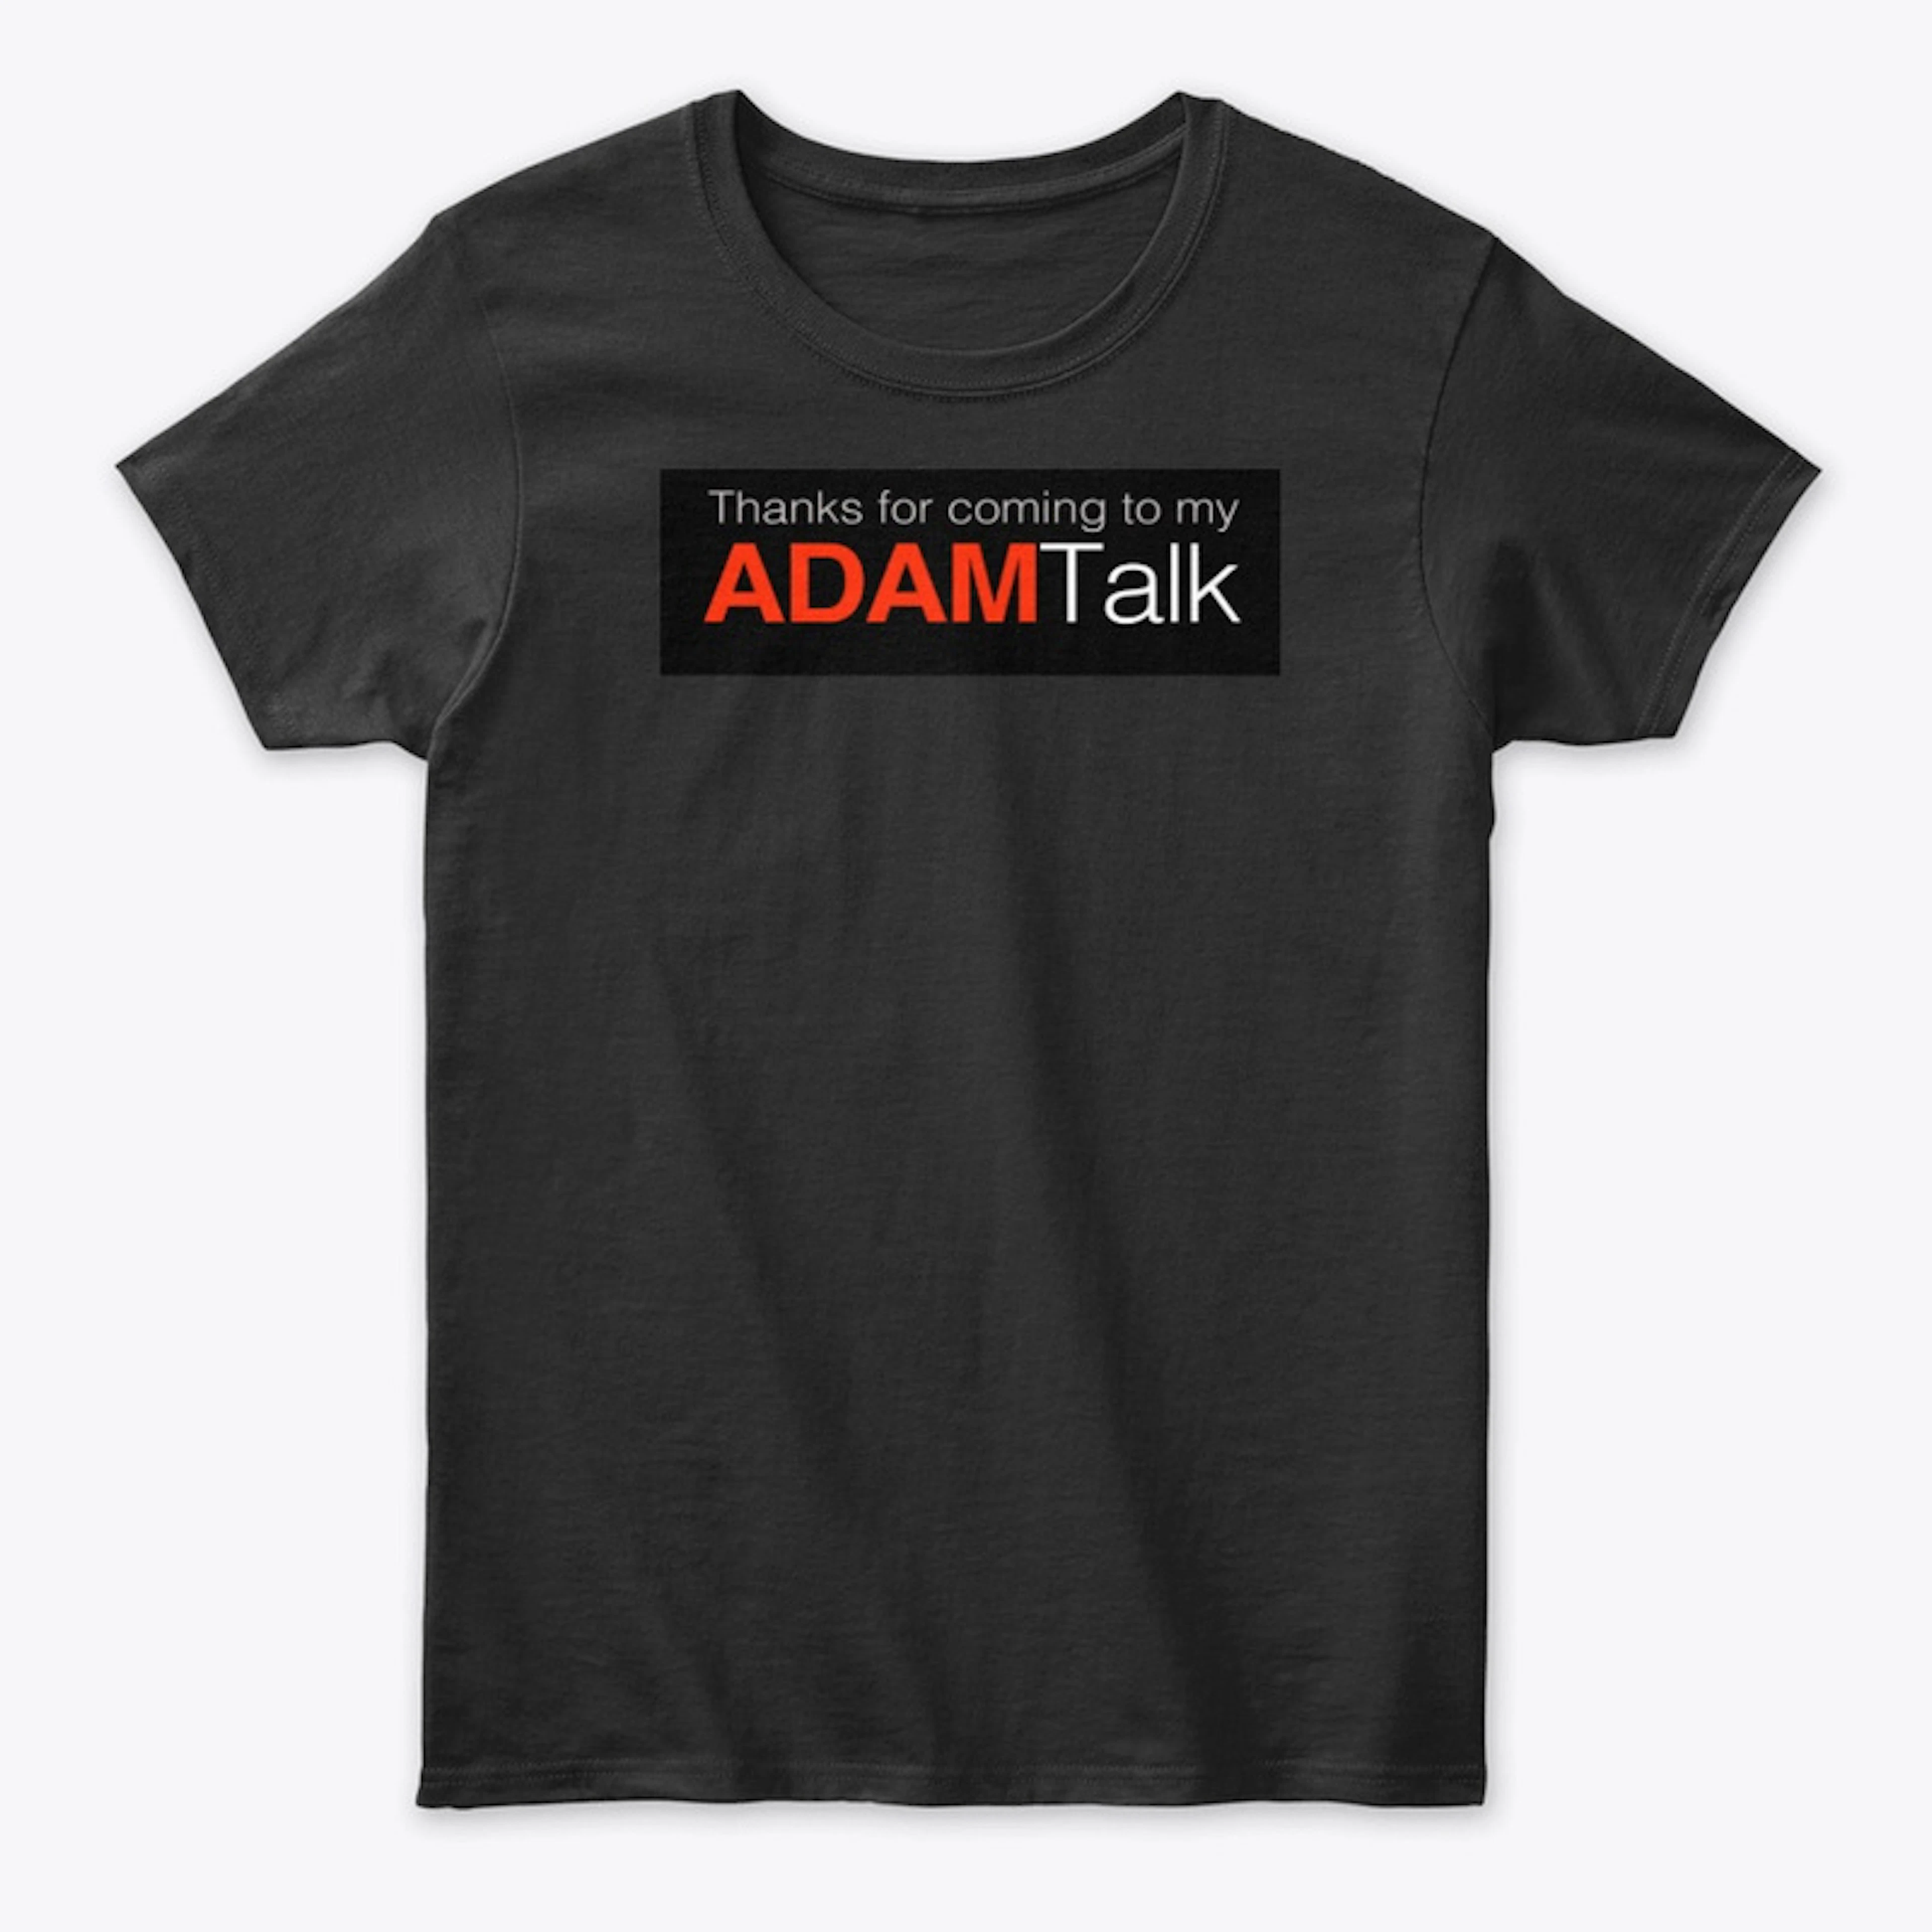 My Adam Talk